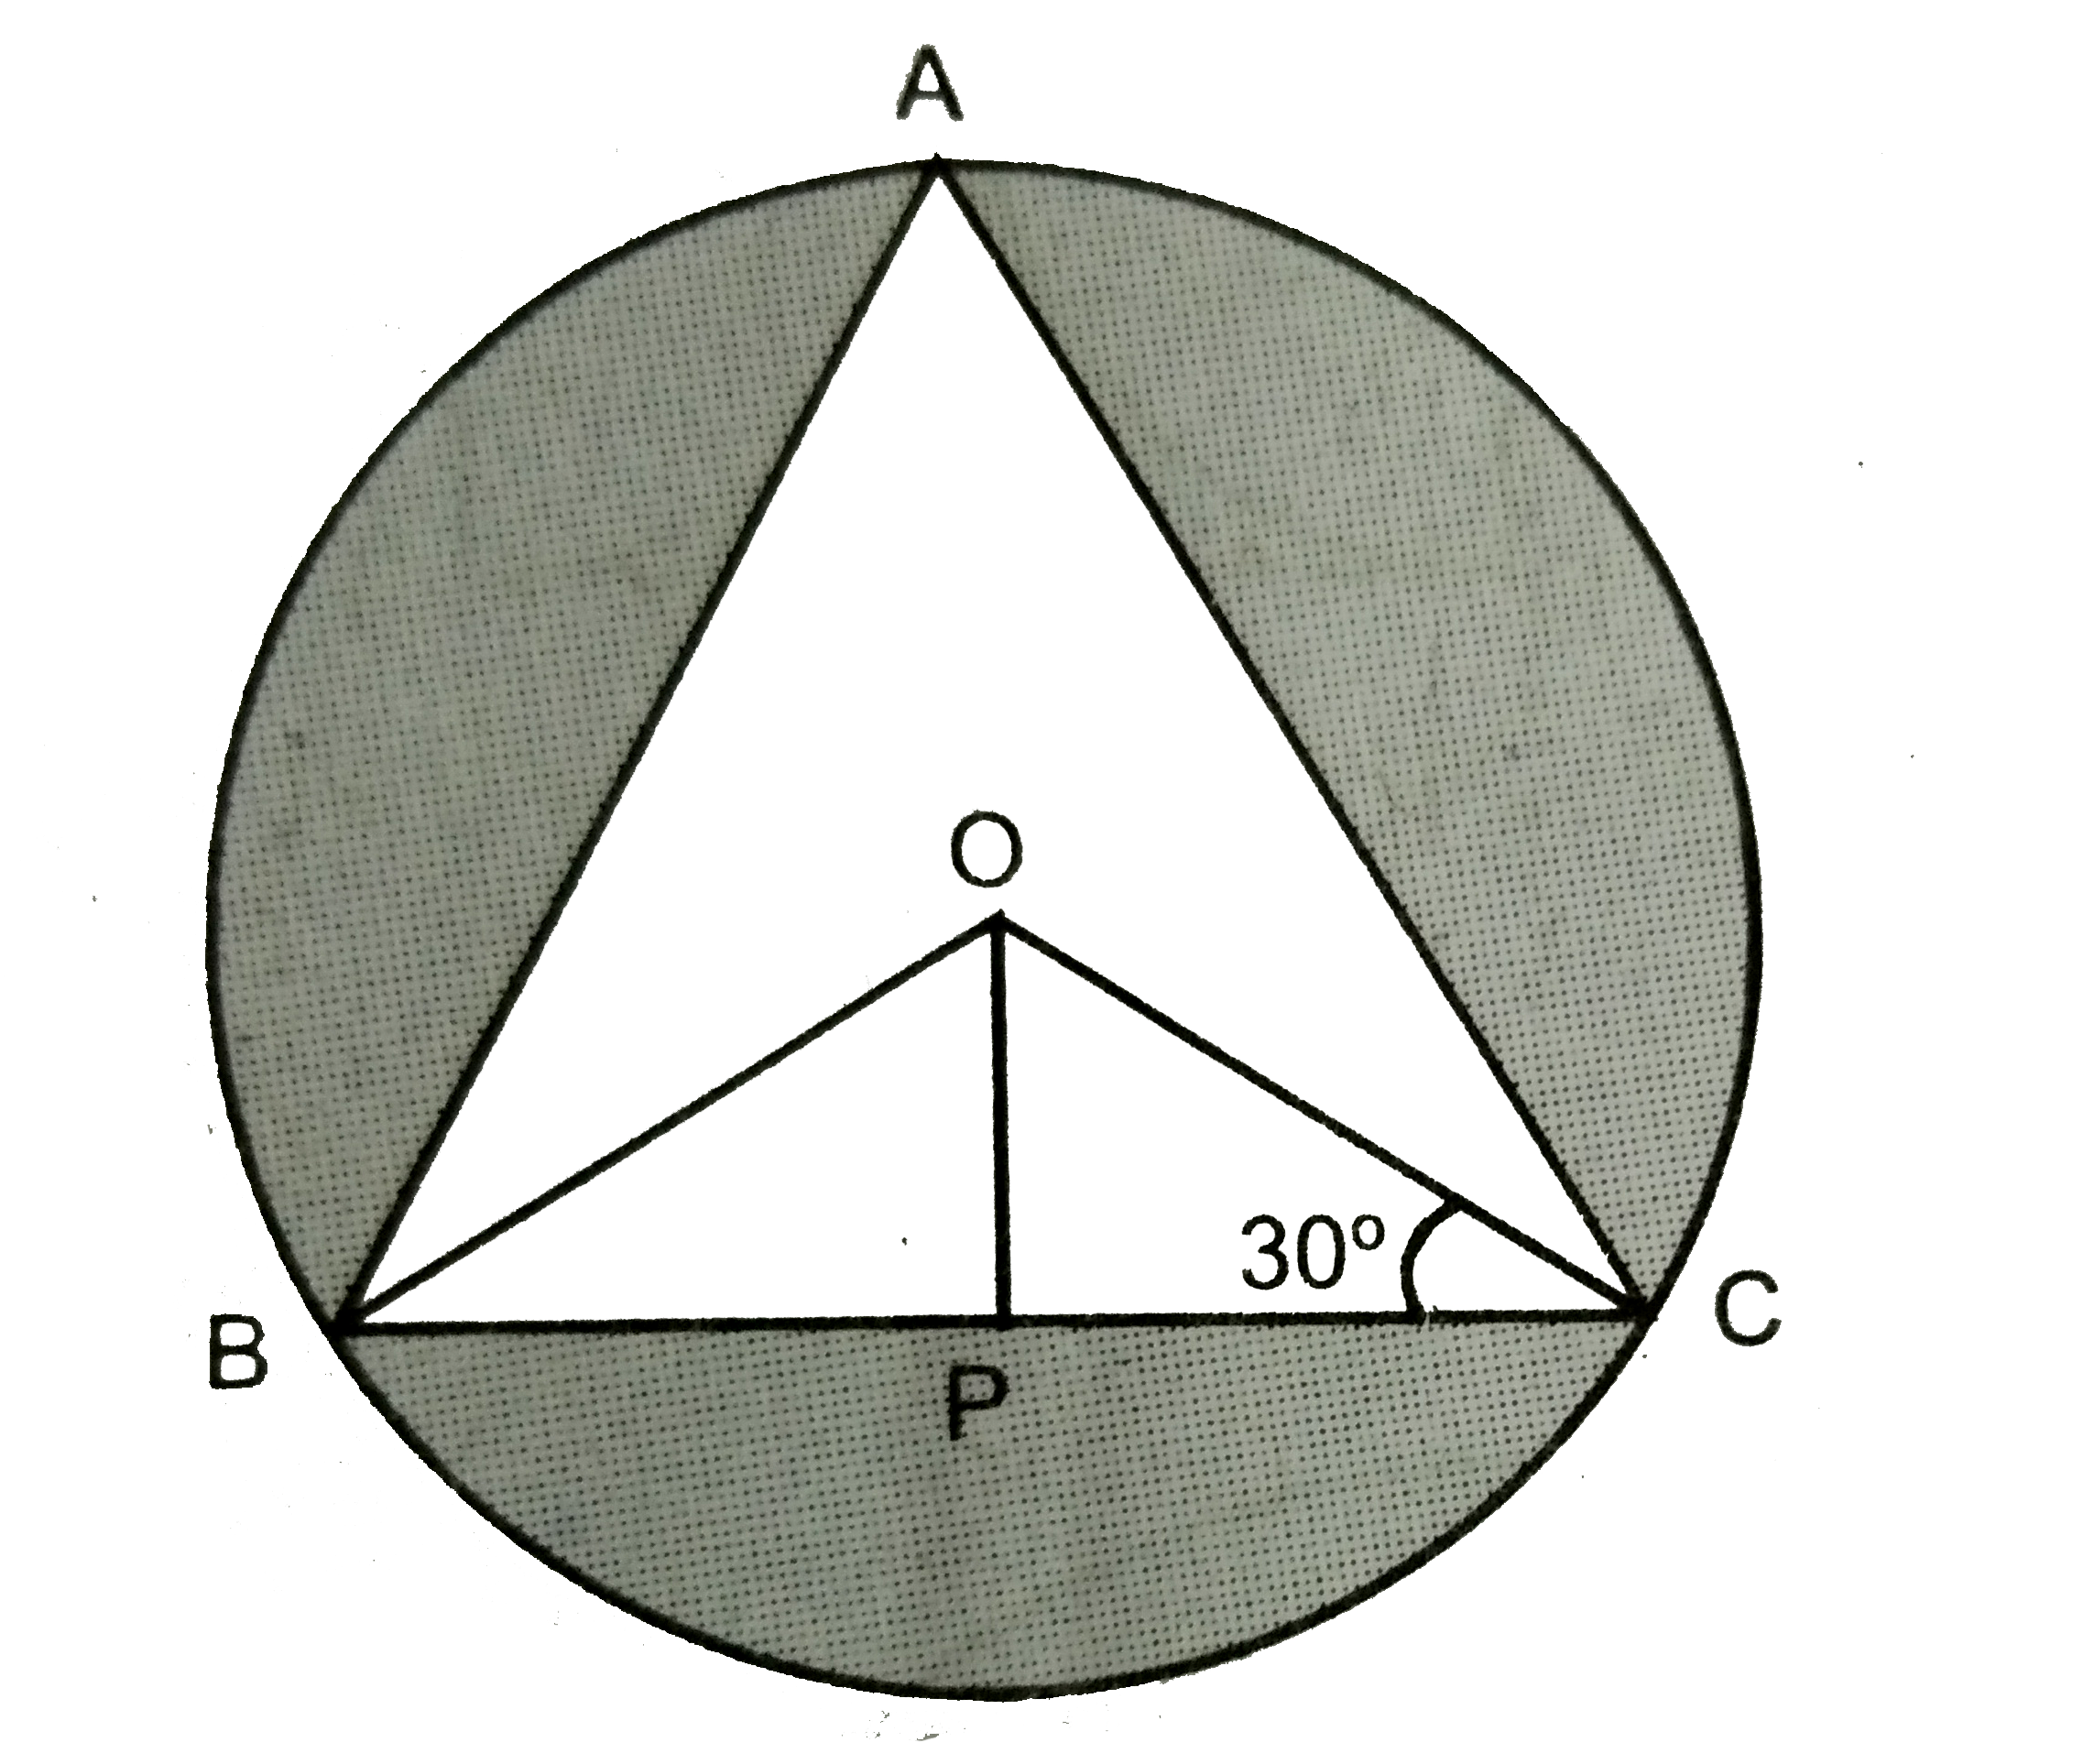 16 cm   त्रिज्या  वाले  एक  वृत्ताकार  मेजपोश  में   एक  डिजाइन  (आकृति )  समबाहु  त्रिभुज  ABC  को  छोड़कर  मध्य  में  बनाई  गई।  जैसाकि  चित्र  में है तब  आकृति  के  छायांकित  भाग  का  क्षेत्रफल ज्ञात करे।